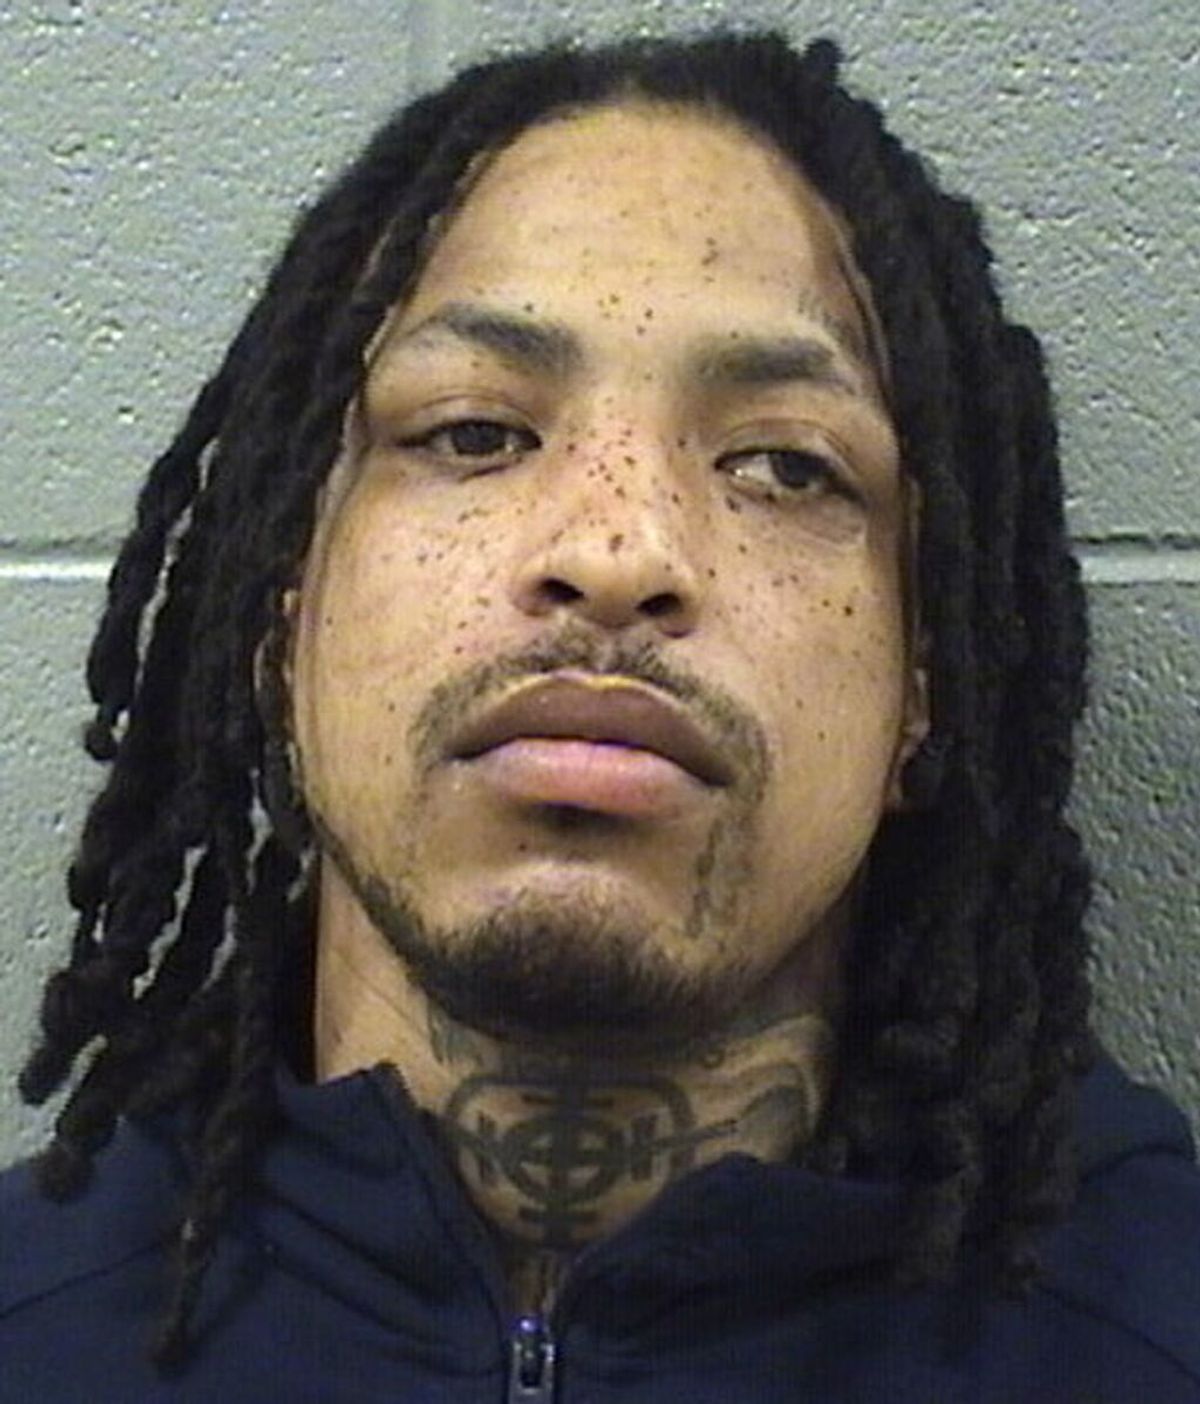 Abaten con 64 disparos al rapero Londre Sylvester cuando salía de la cárcel en Chicago